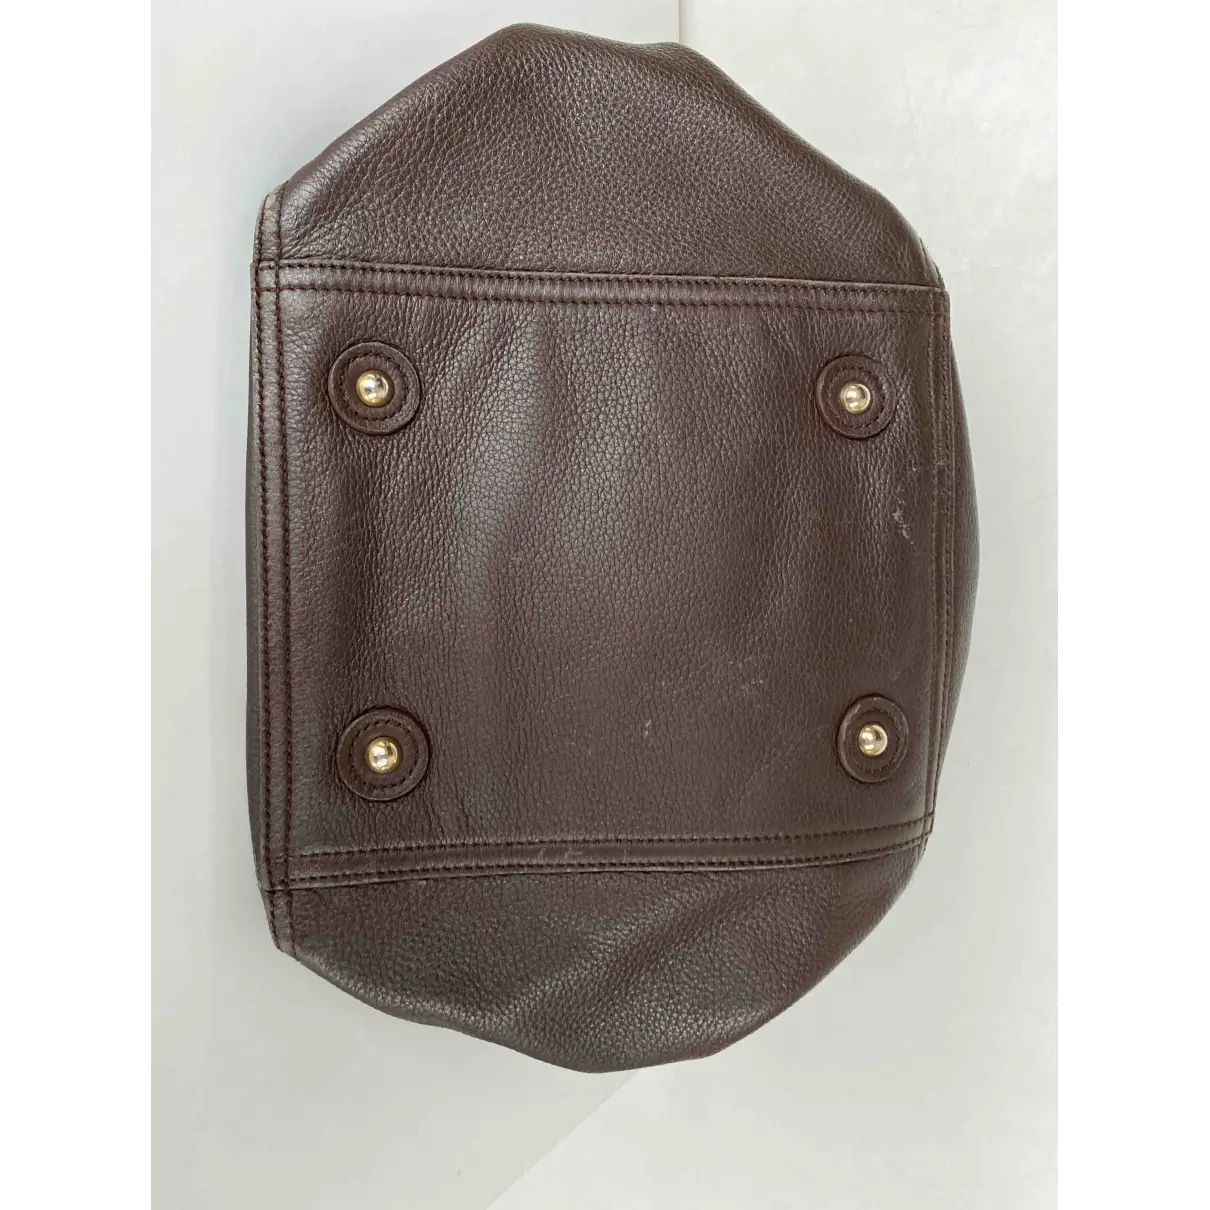 Downtown leather handbag Saint Laurent